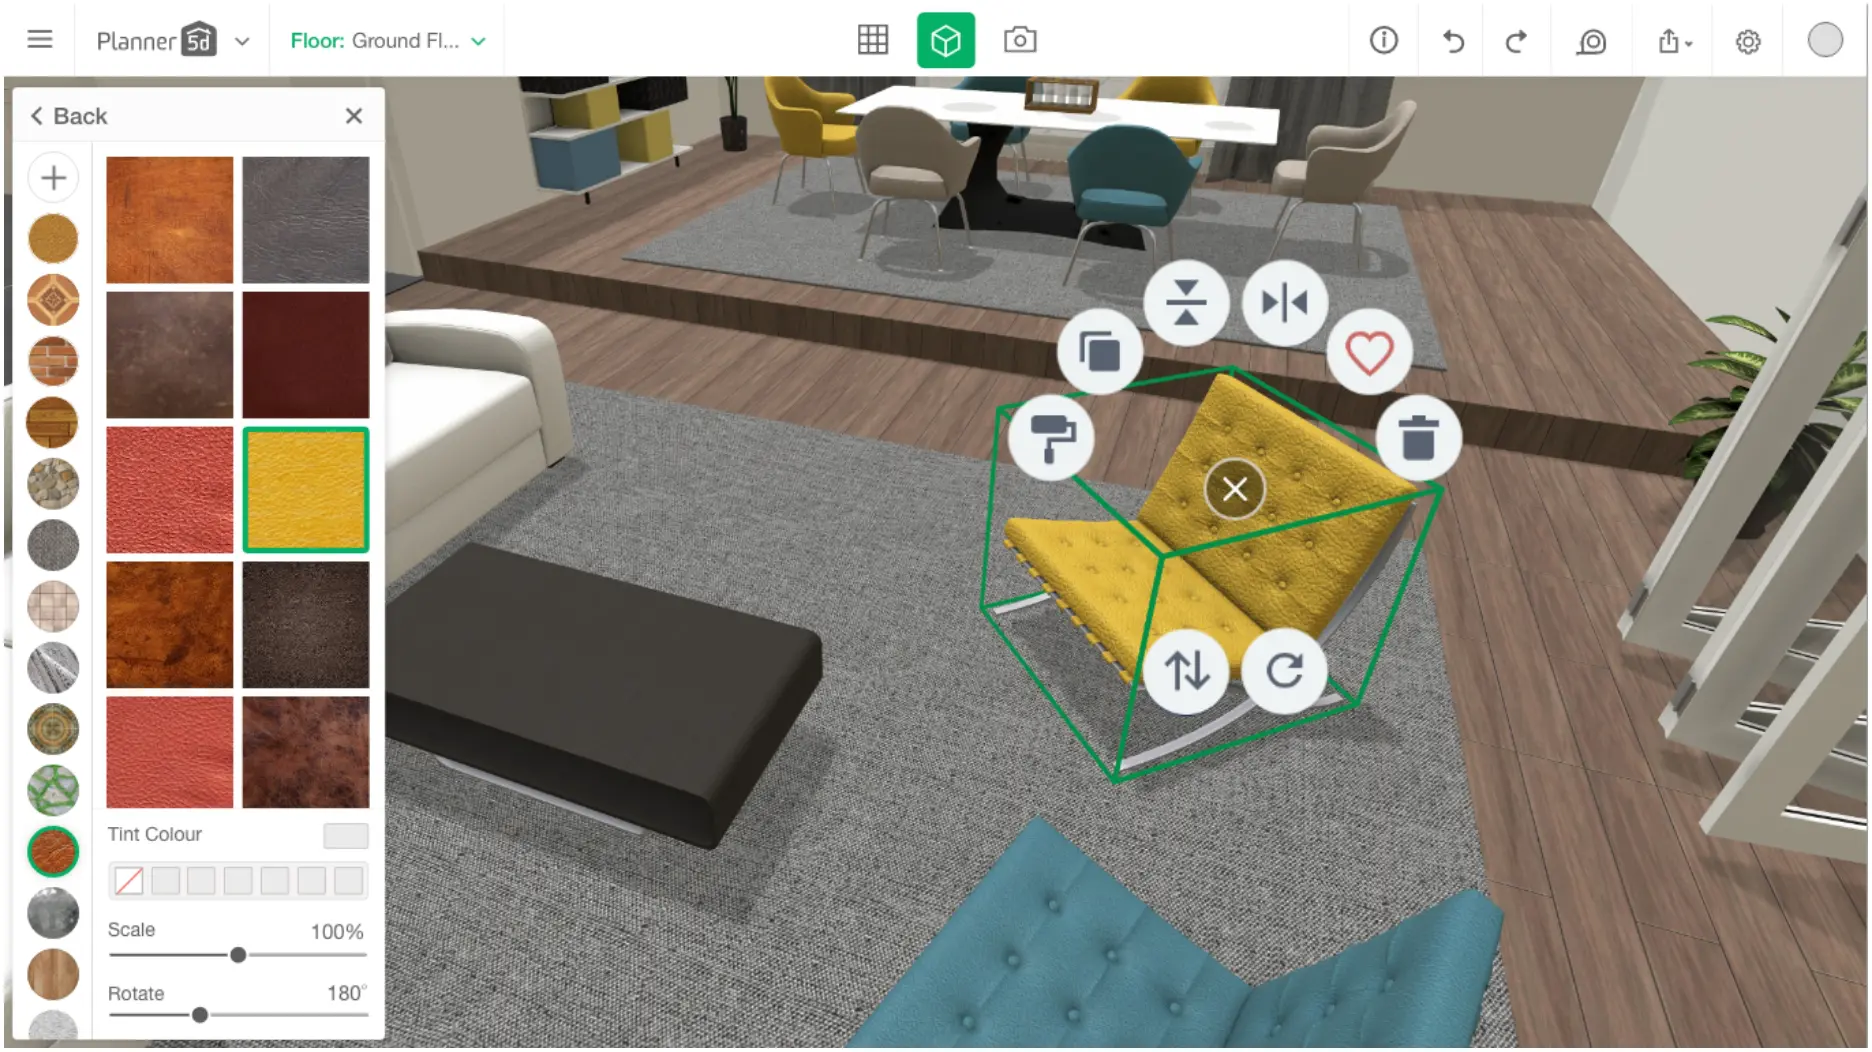 Construir casa 3D - juego gratis online